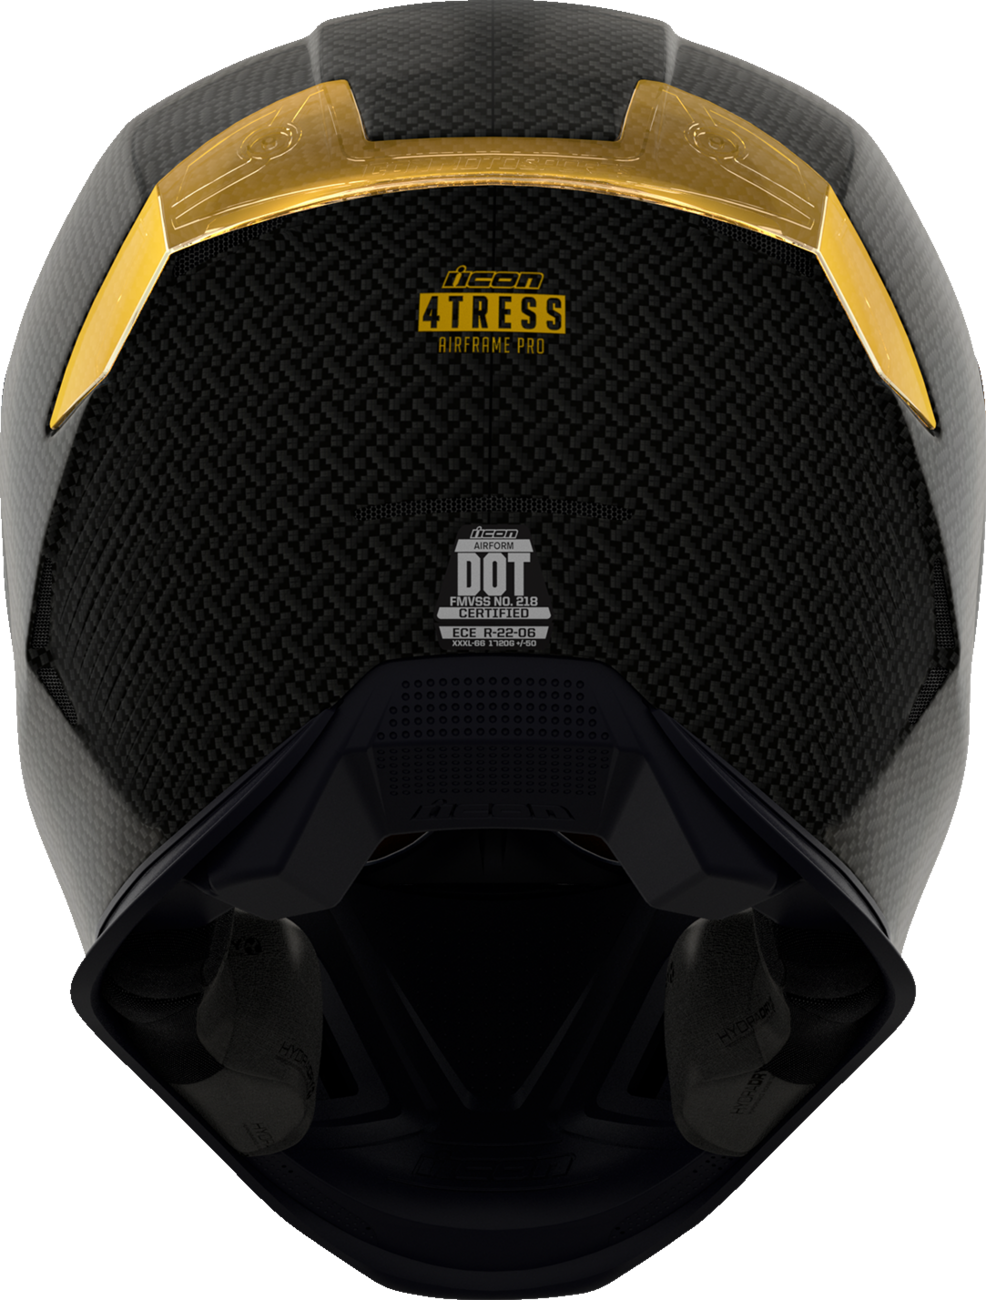 ICON Airframe Pro™ Helmet - Carbon 4Tress - Yellow - XS 0101-16659